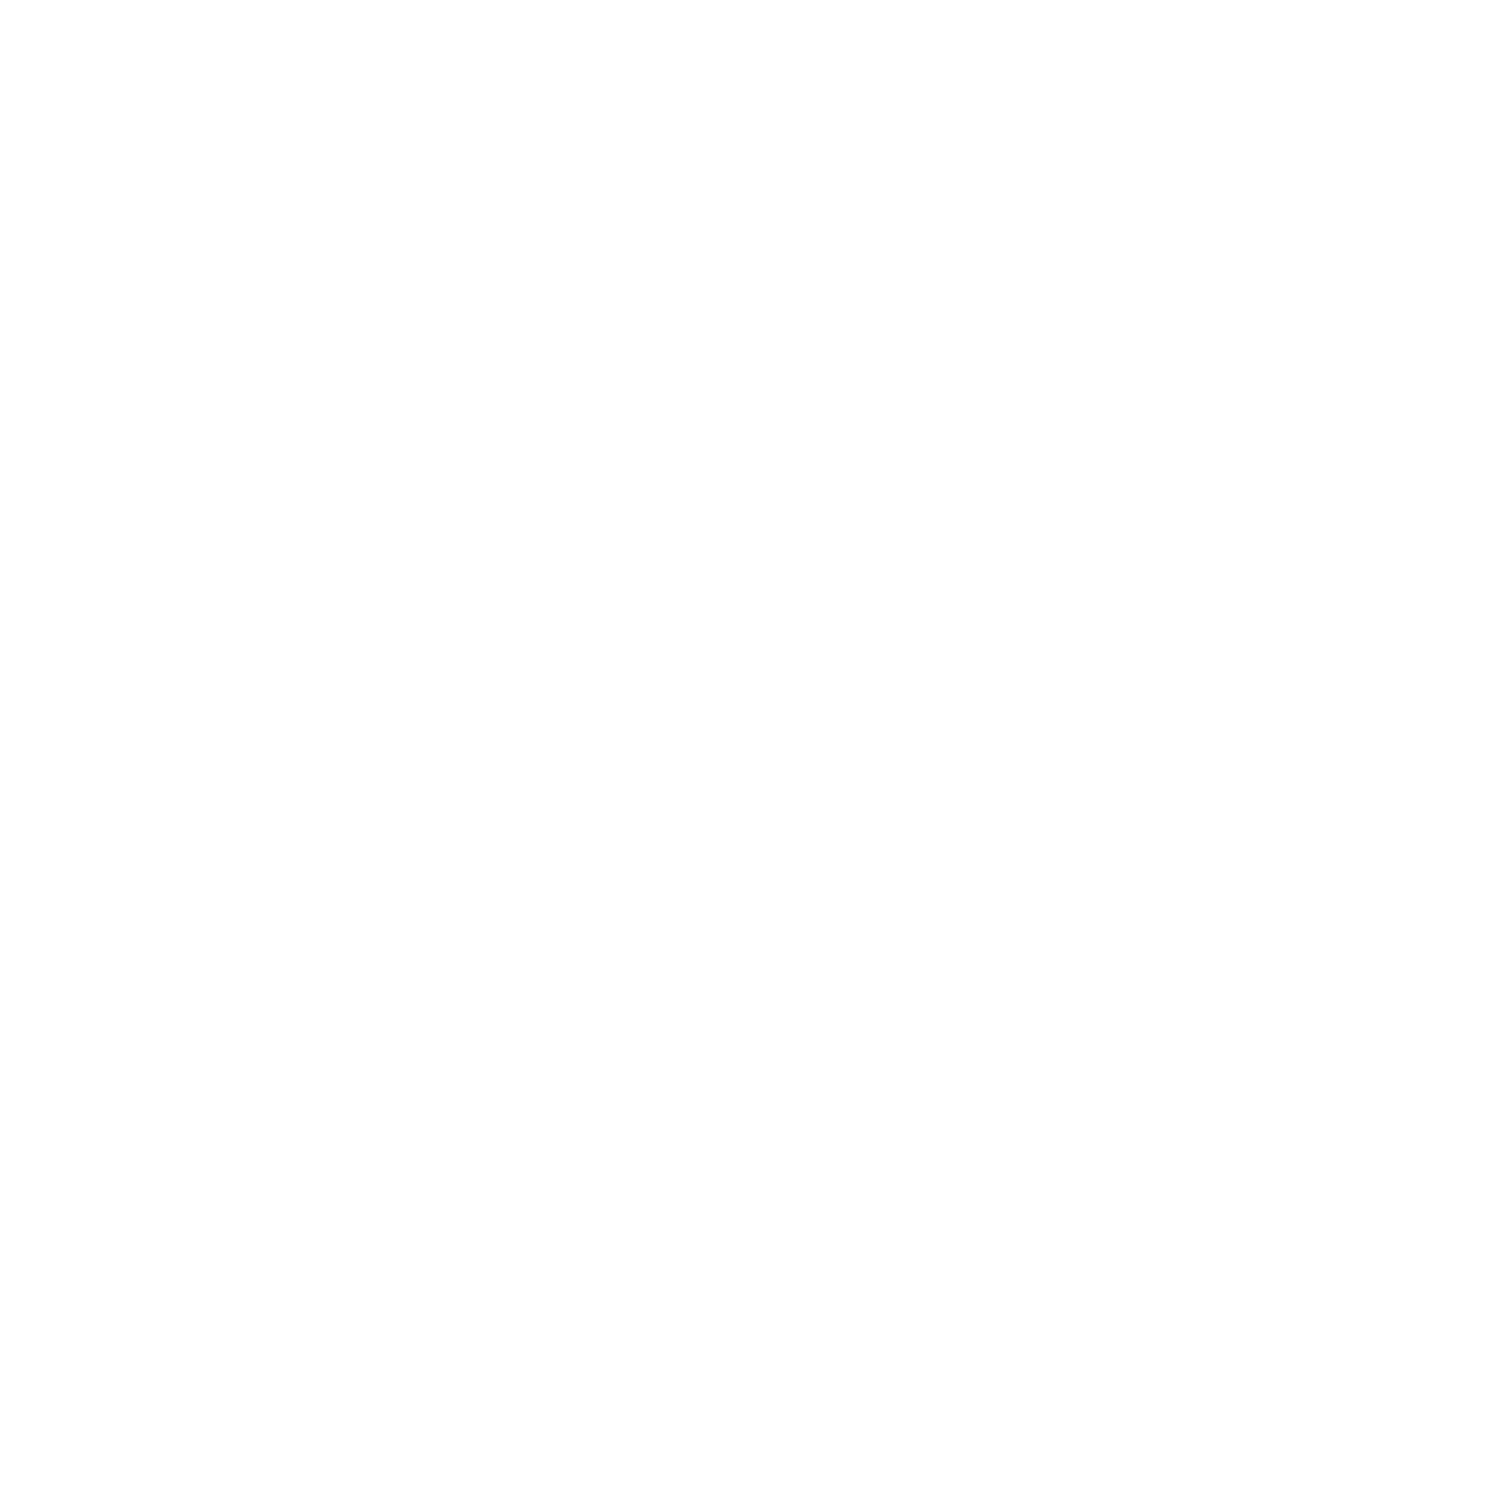 BAKLEY MEDIA